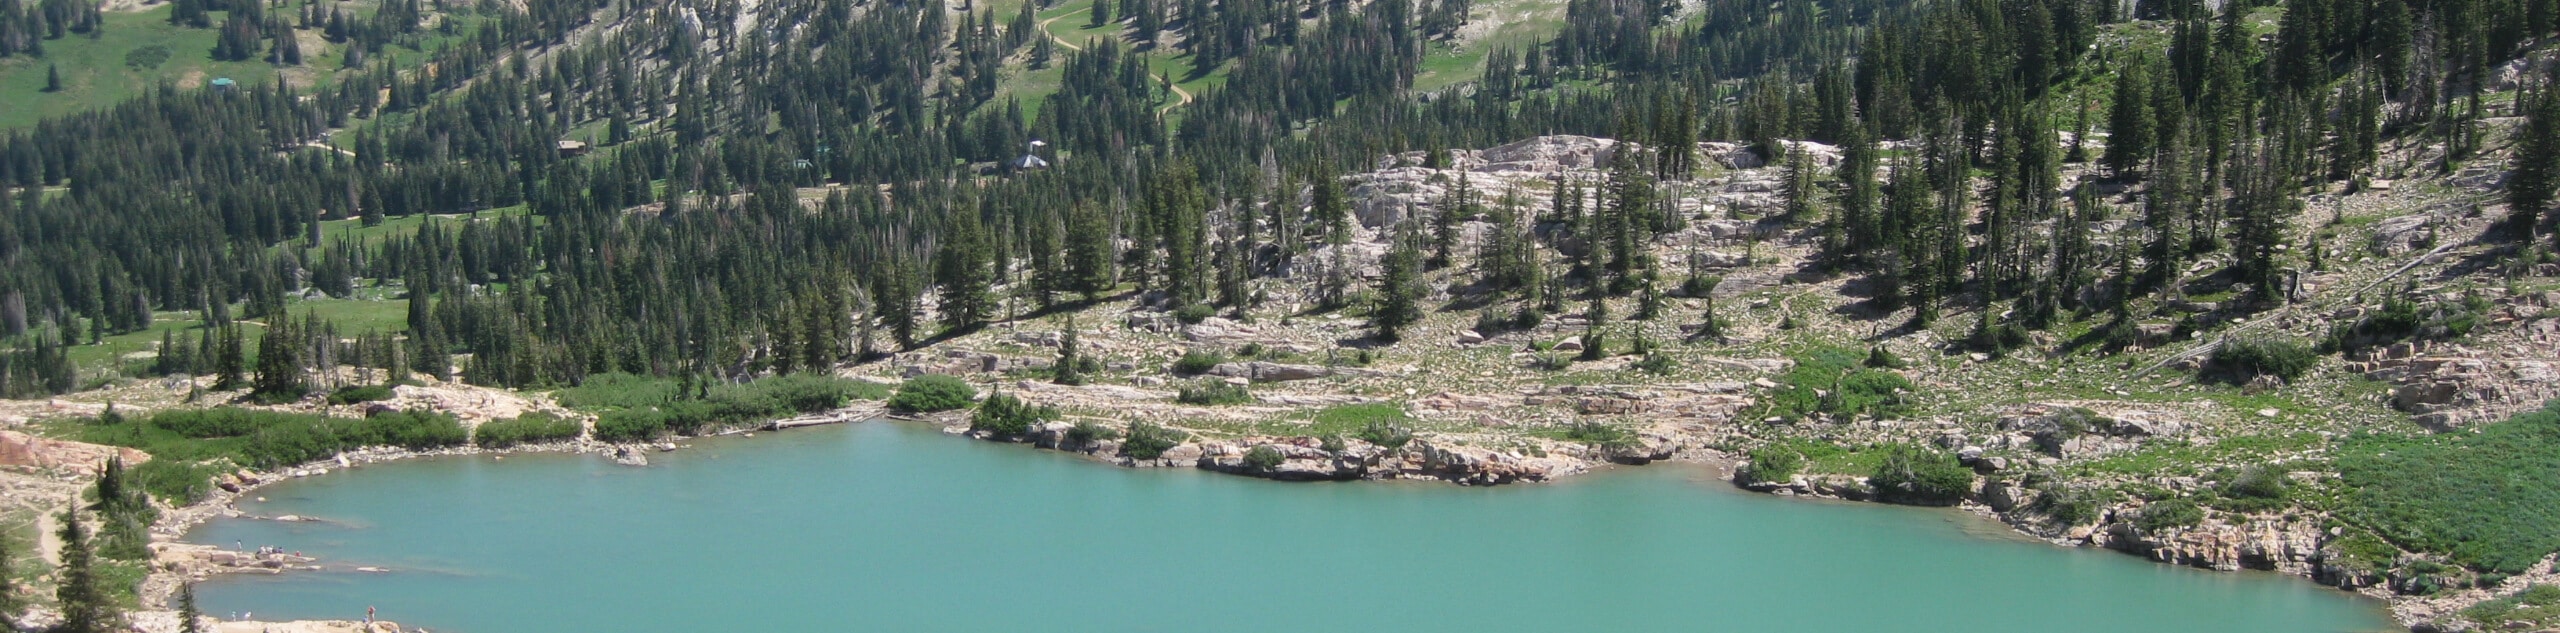 Cecret Lake Trail